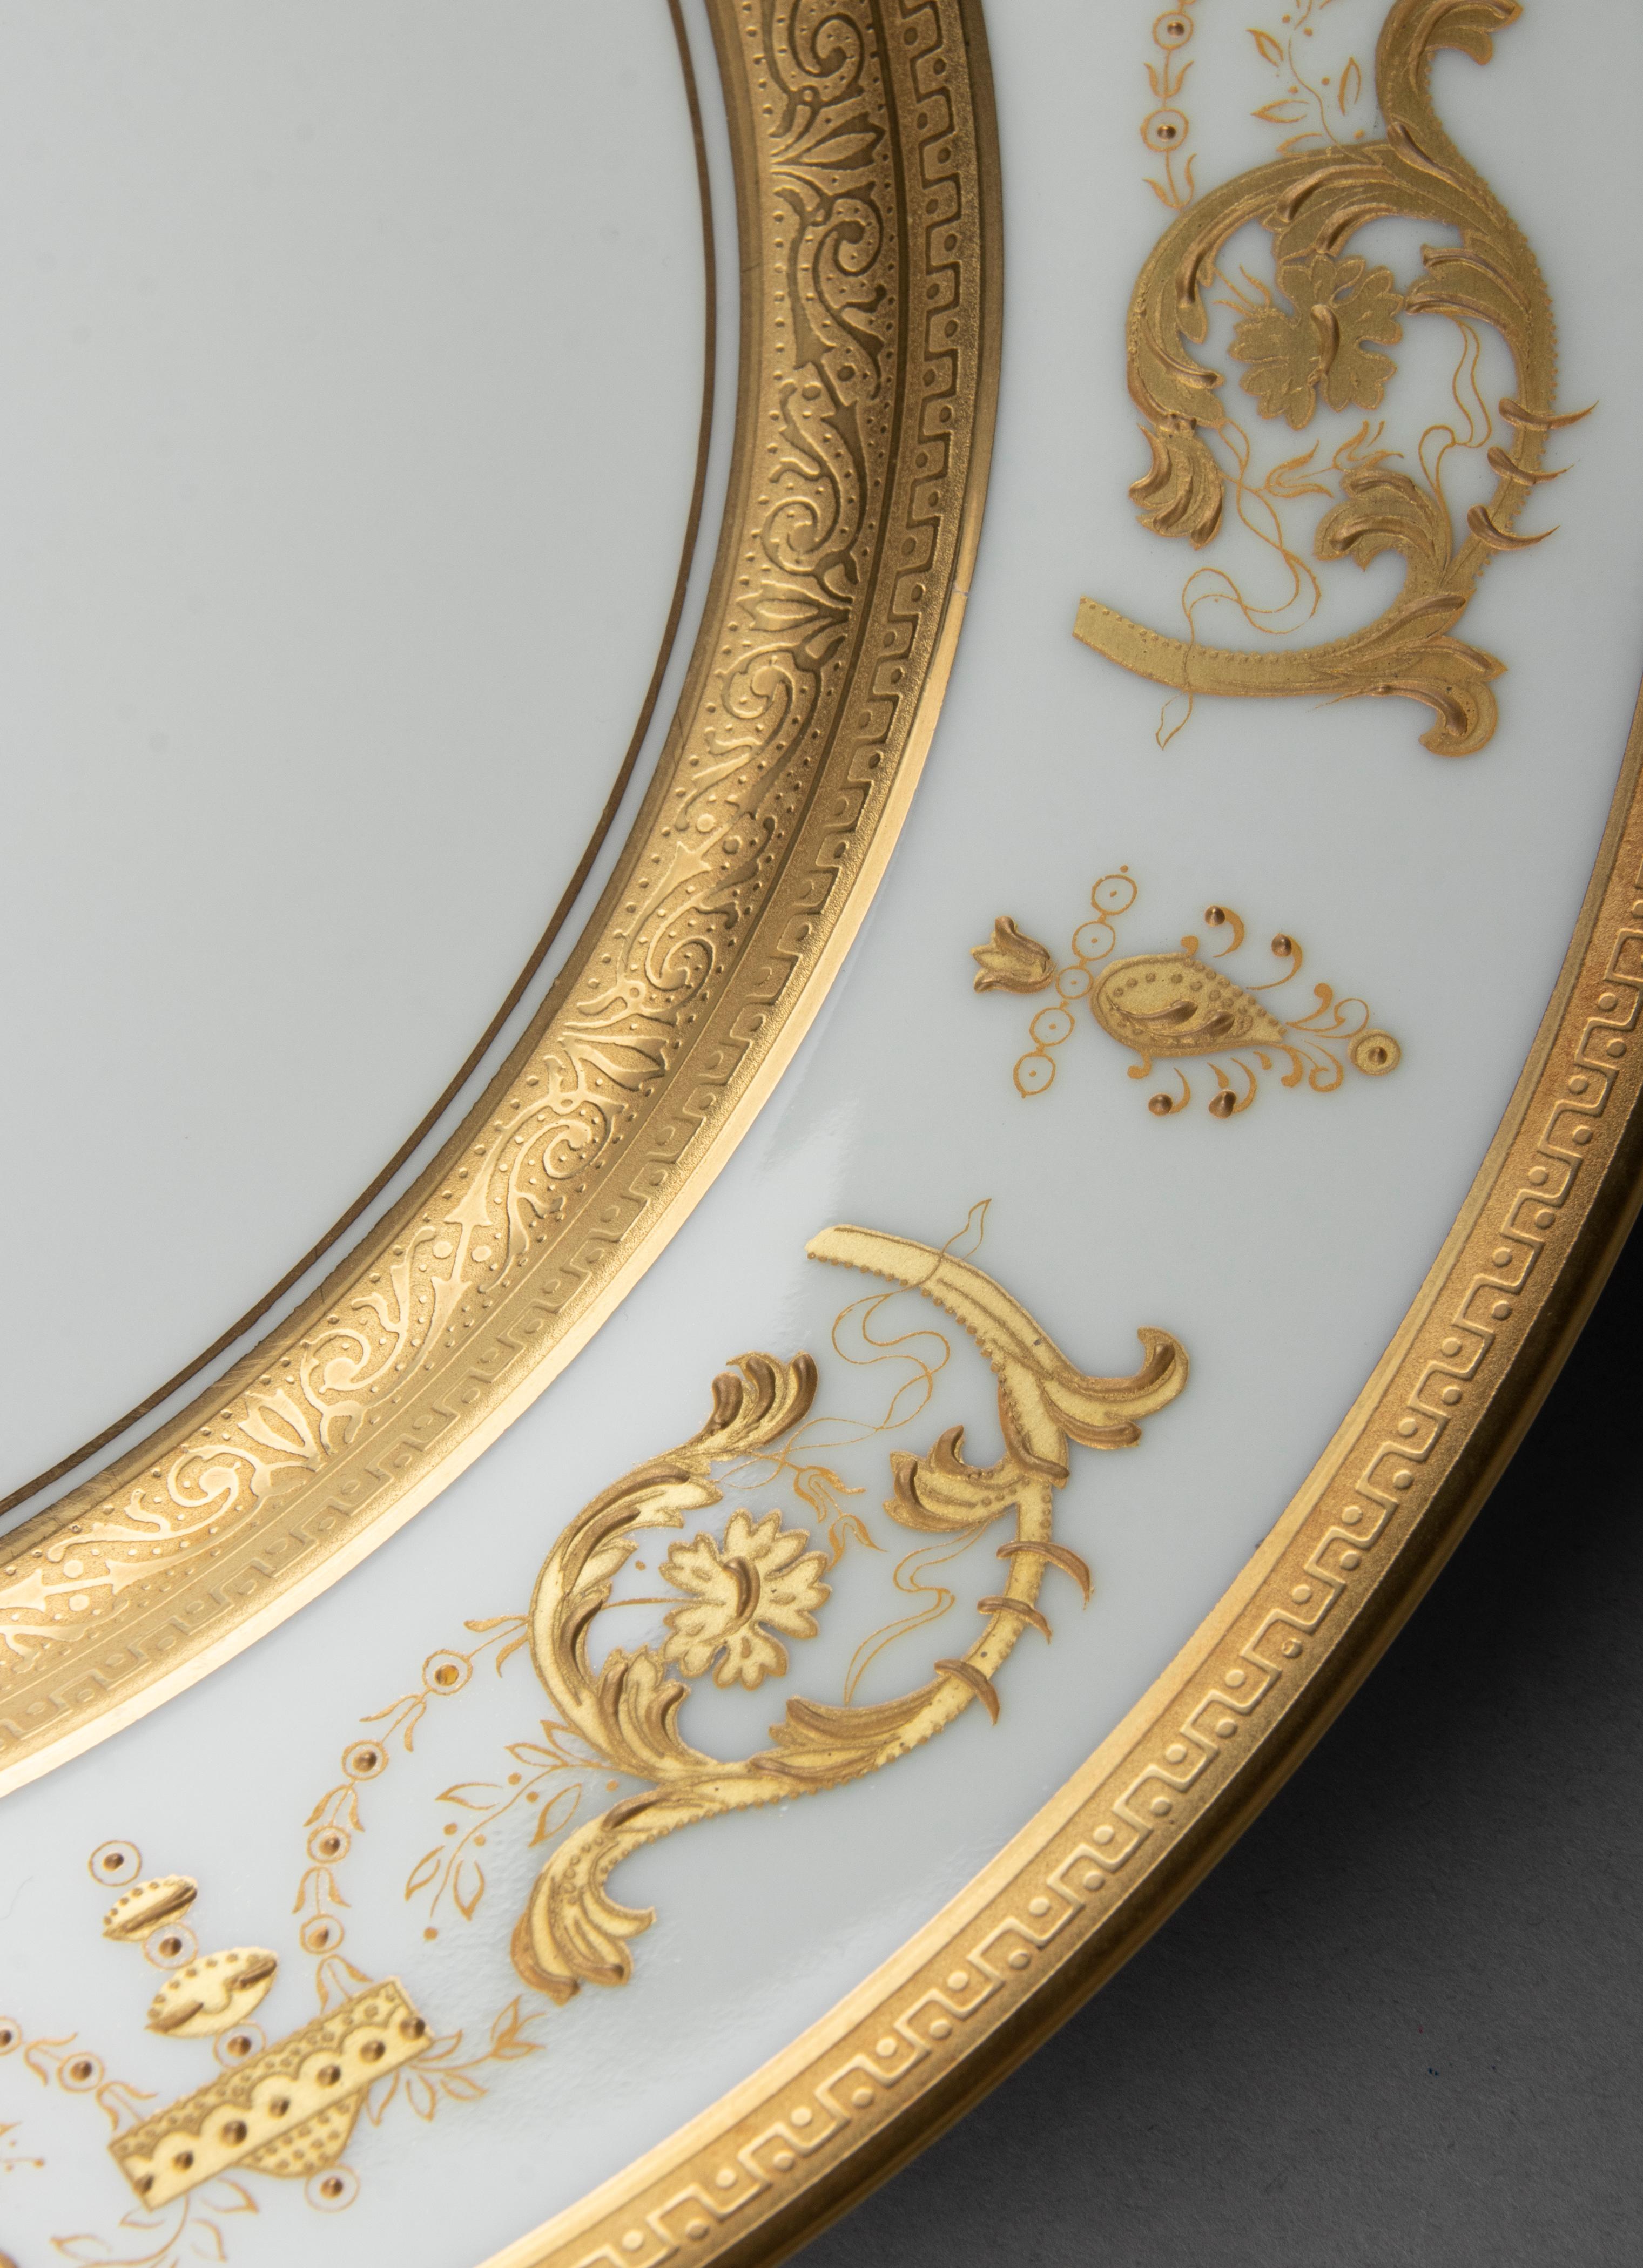 Set of 6 Porcelain Dinner Plates made by Haviland model Impérator Or 4